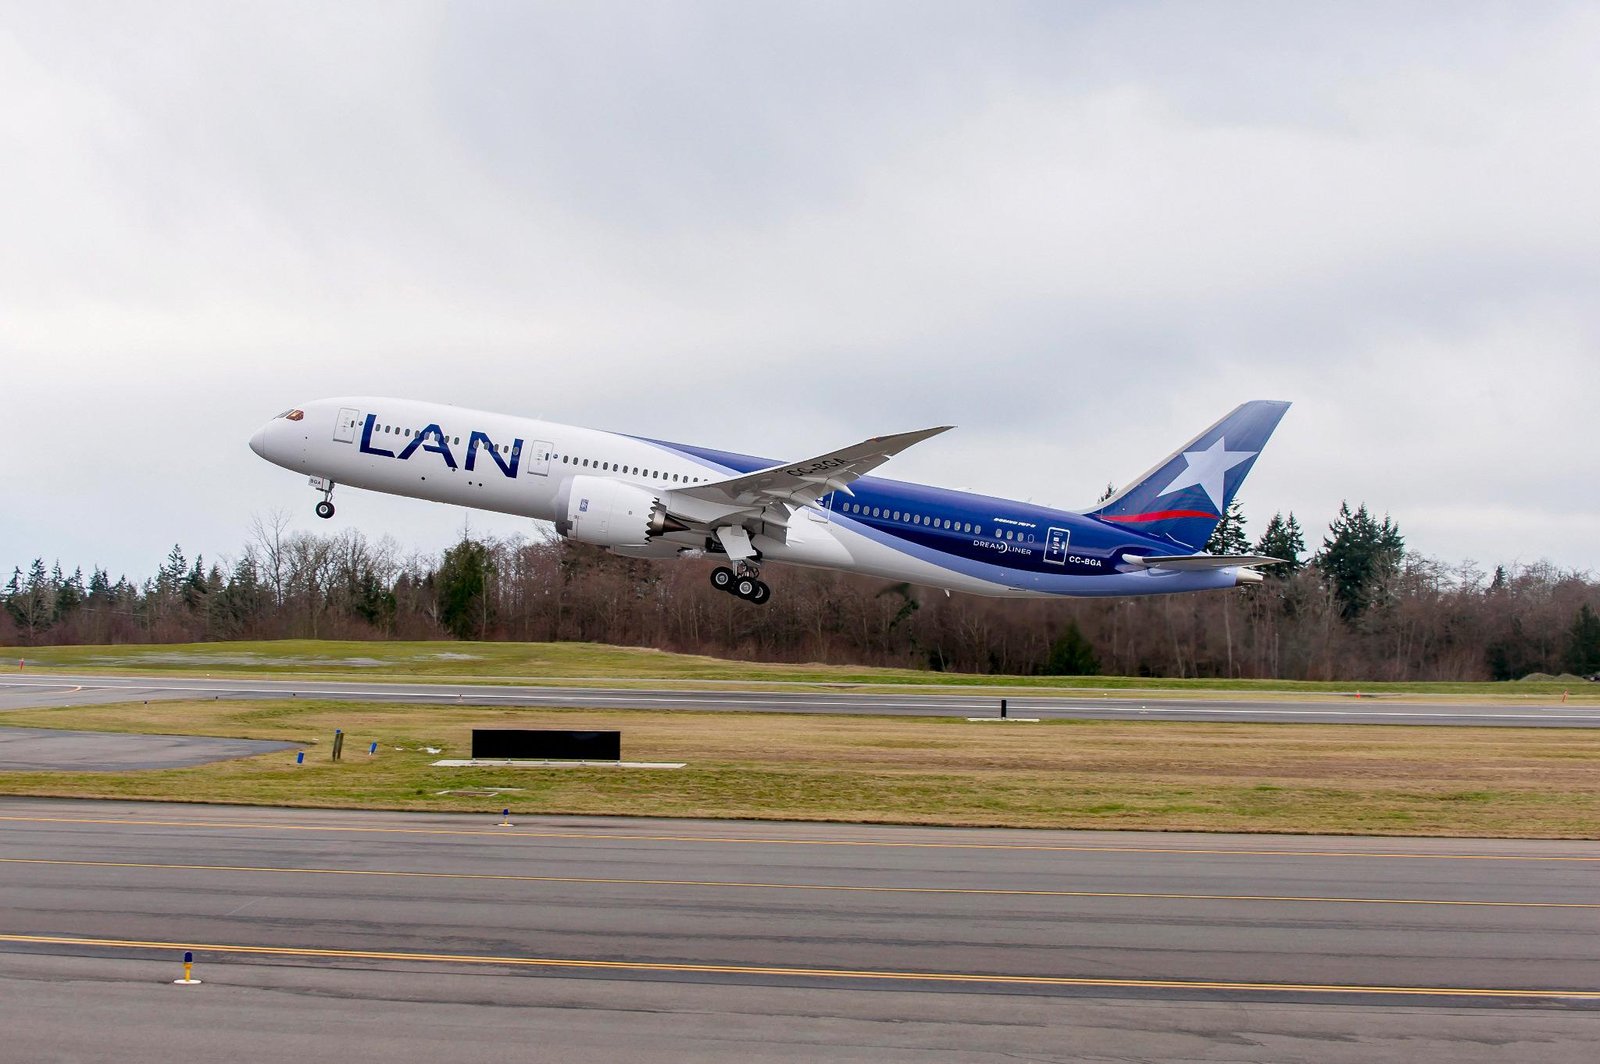 El 787-9 de LATAM estaba a 50 minutos de aterrizar en Auckland, Nueva Zelanda. Foto: Boeing